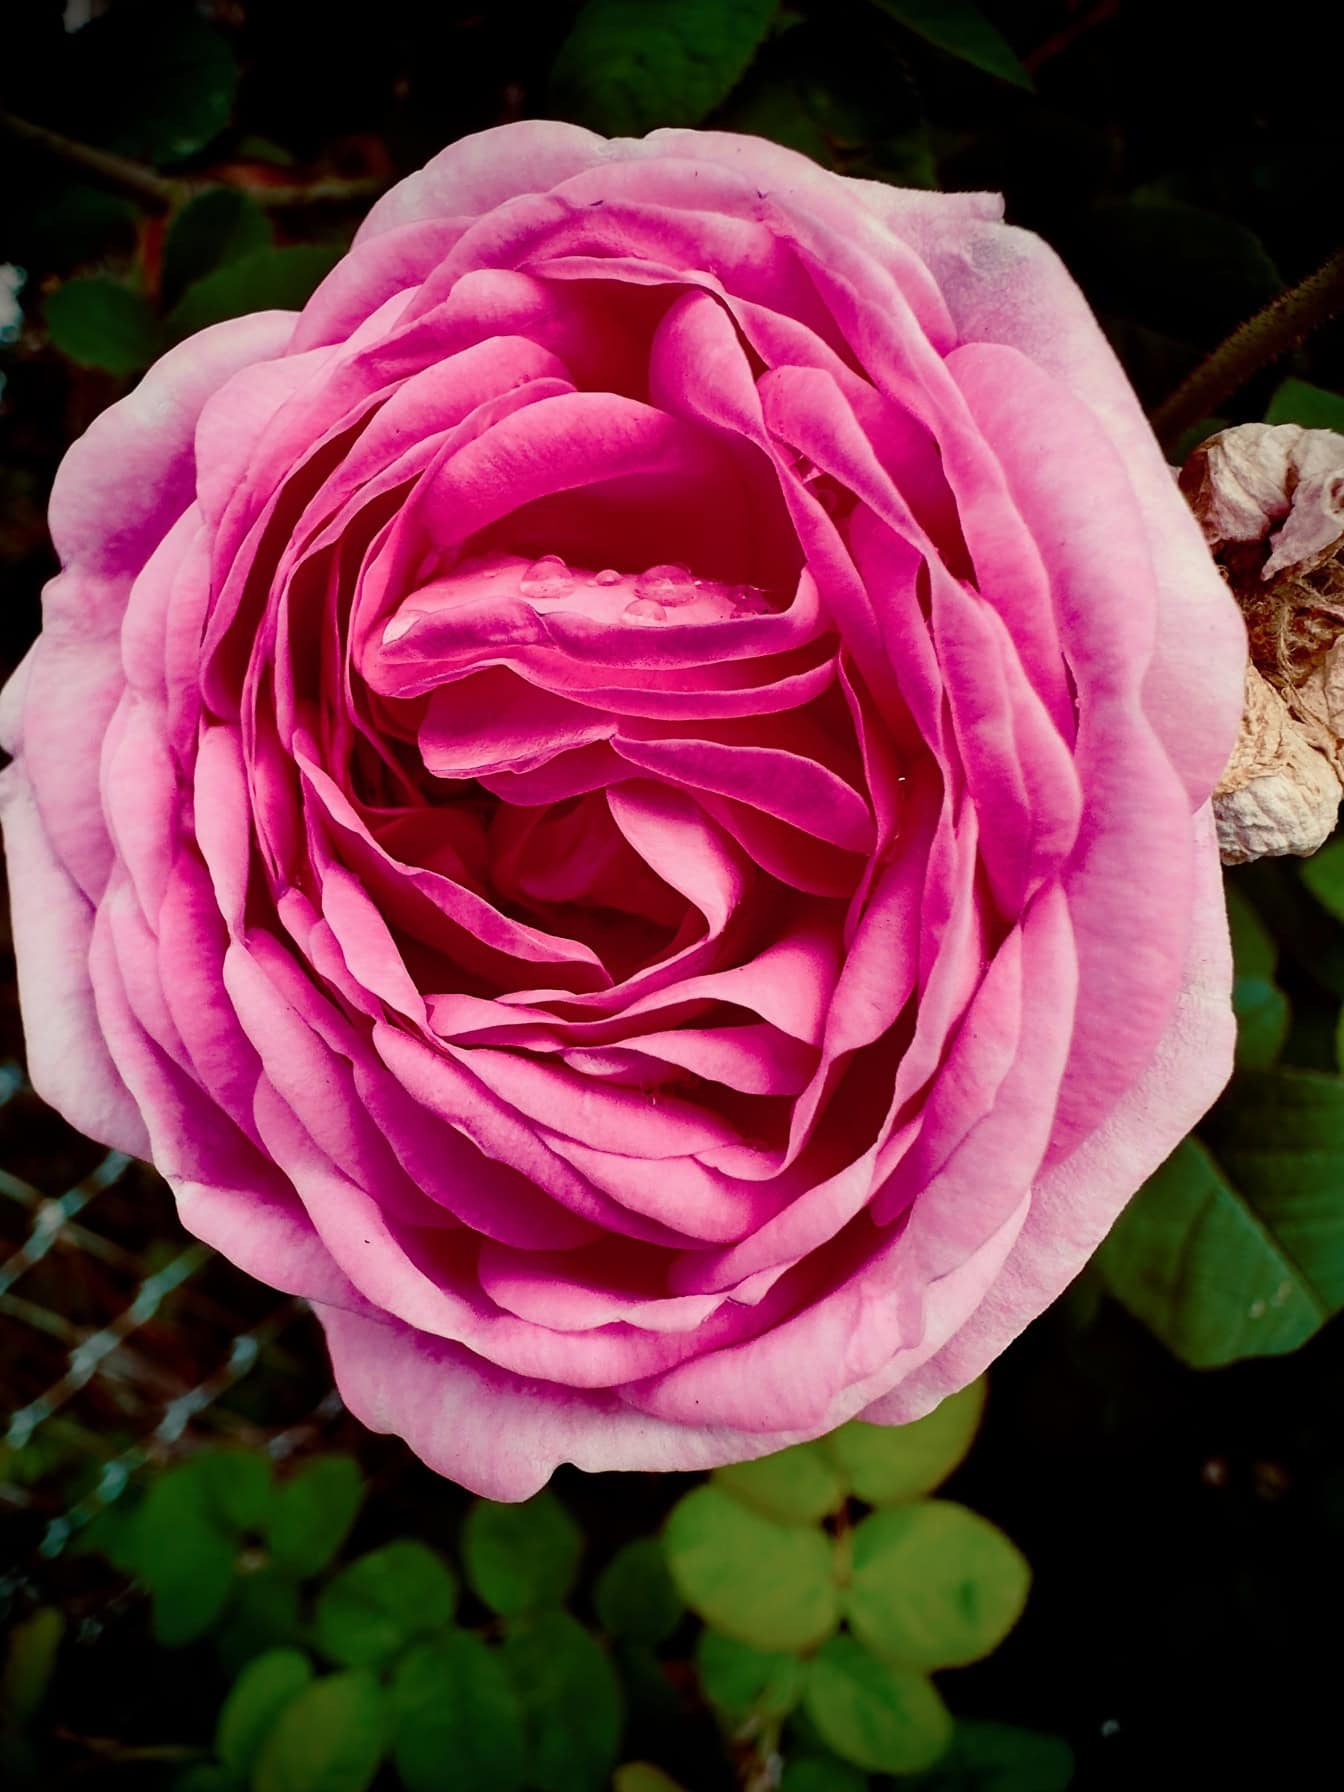 Közelkép egy gyönyörű rózsaszín angol rózsáról, harmatcseppekkel a szirmokon